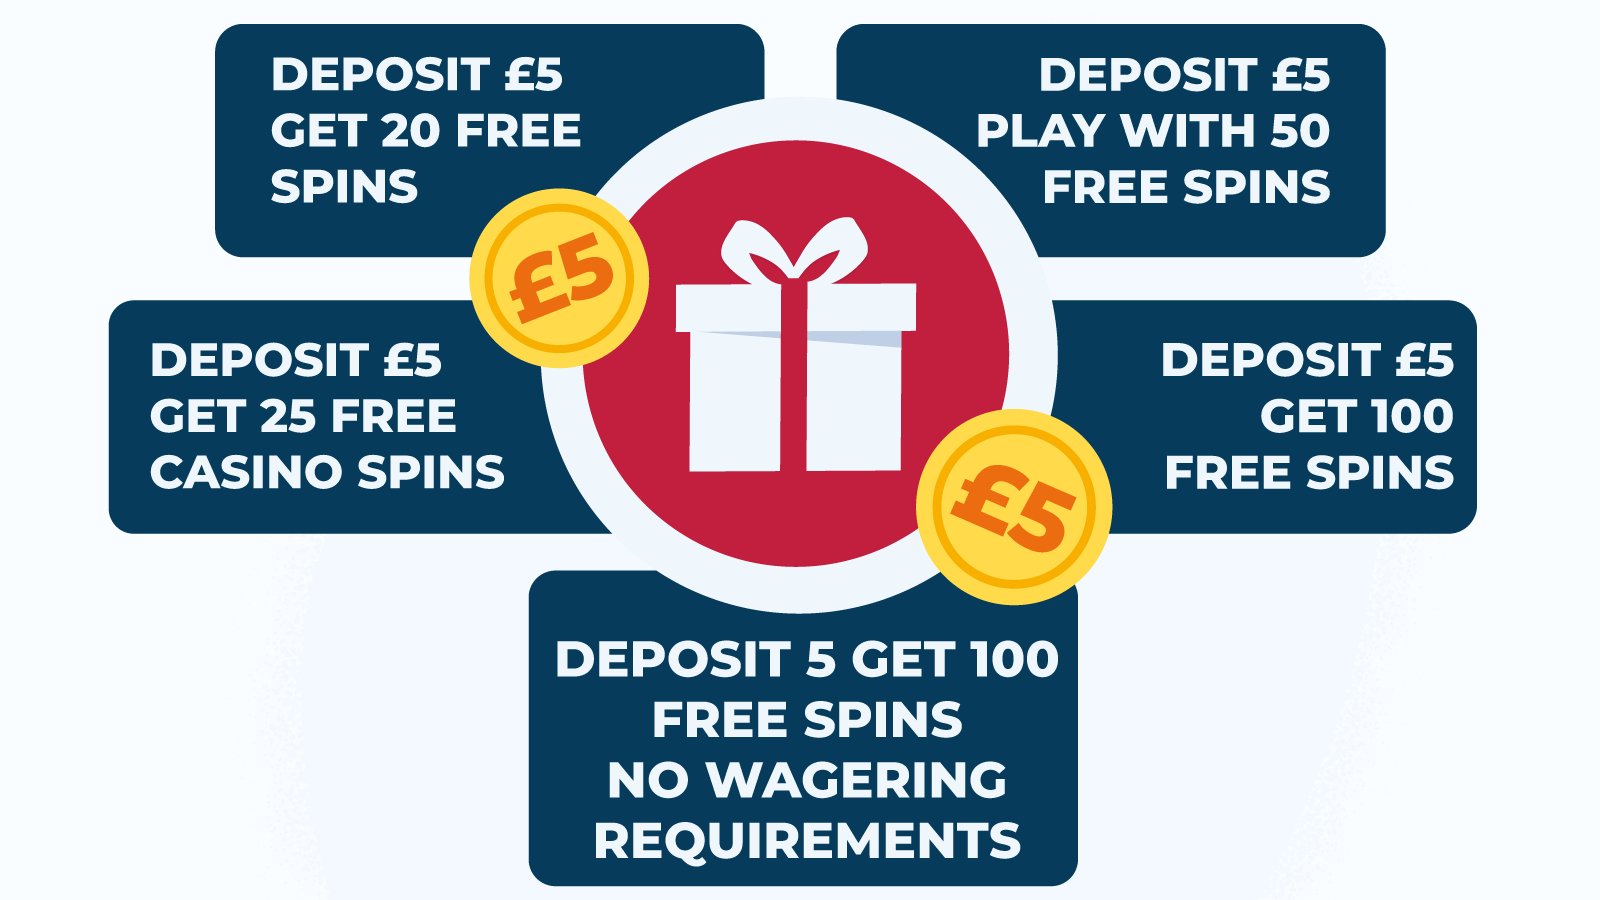 Deposit £5 Get Bonus